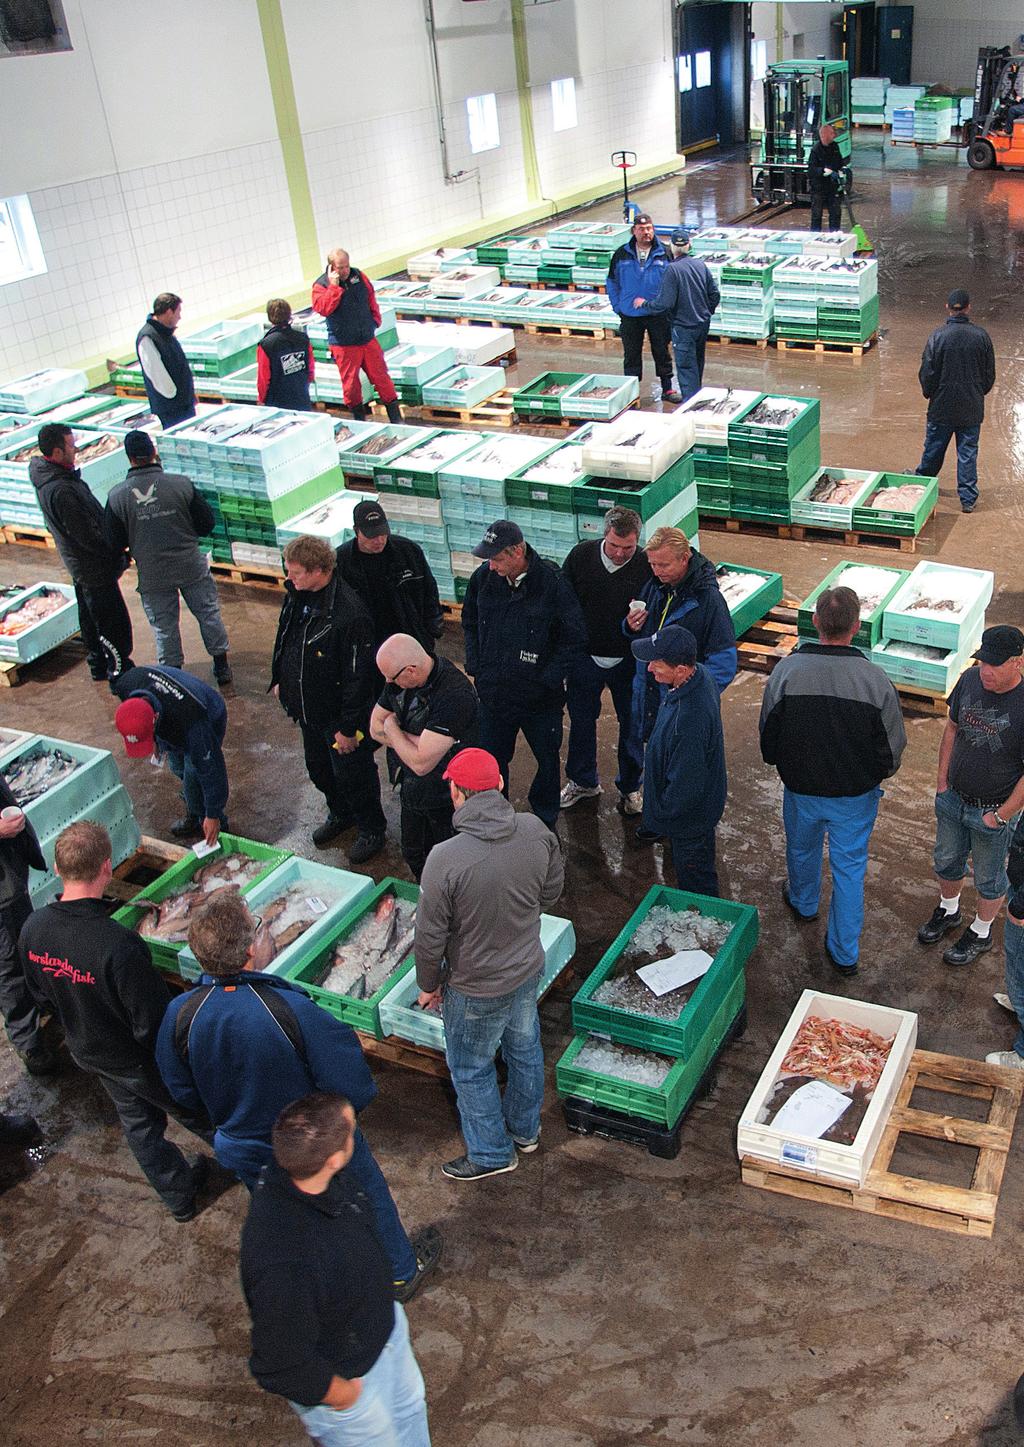 REPORTASJE / FISK REPORTASJE / FISK På besøk i fiskehavnen. 22 Gjennom historien har fisk vært en av Sveriges viktigste basismatvarer, og landet er bortskjemt med en lang kystlinje.